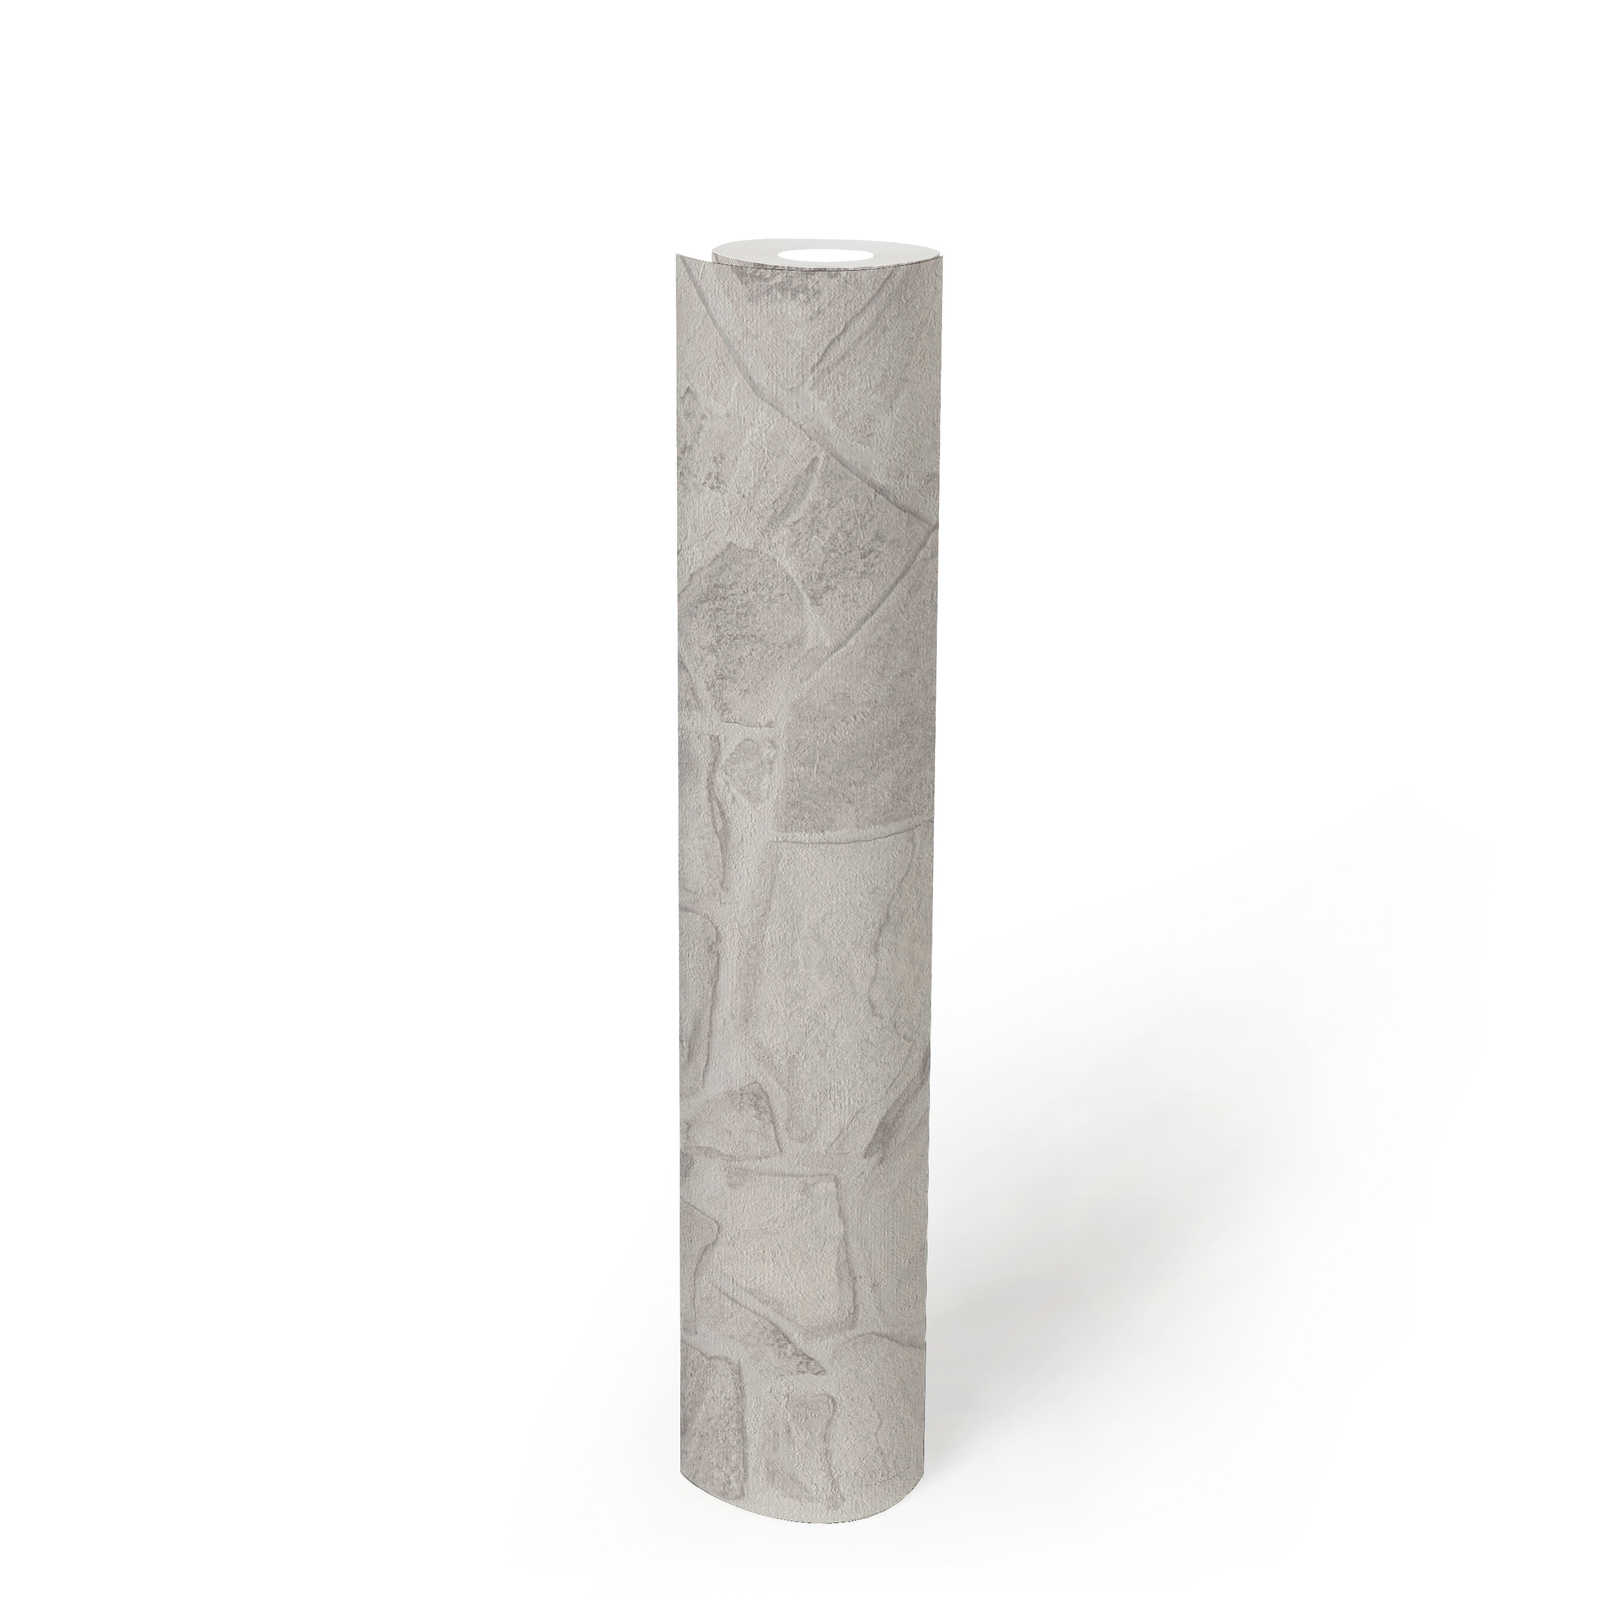             Papier peint intissé imitation pierre avec effet 3D maçonnerie - gris, blanc, gris
        